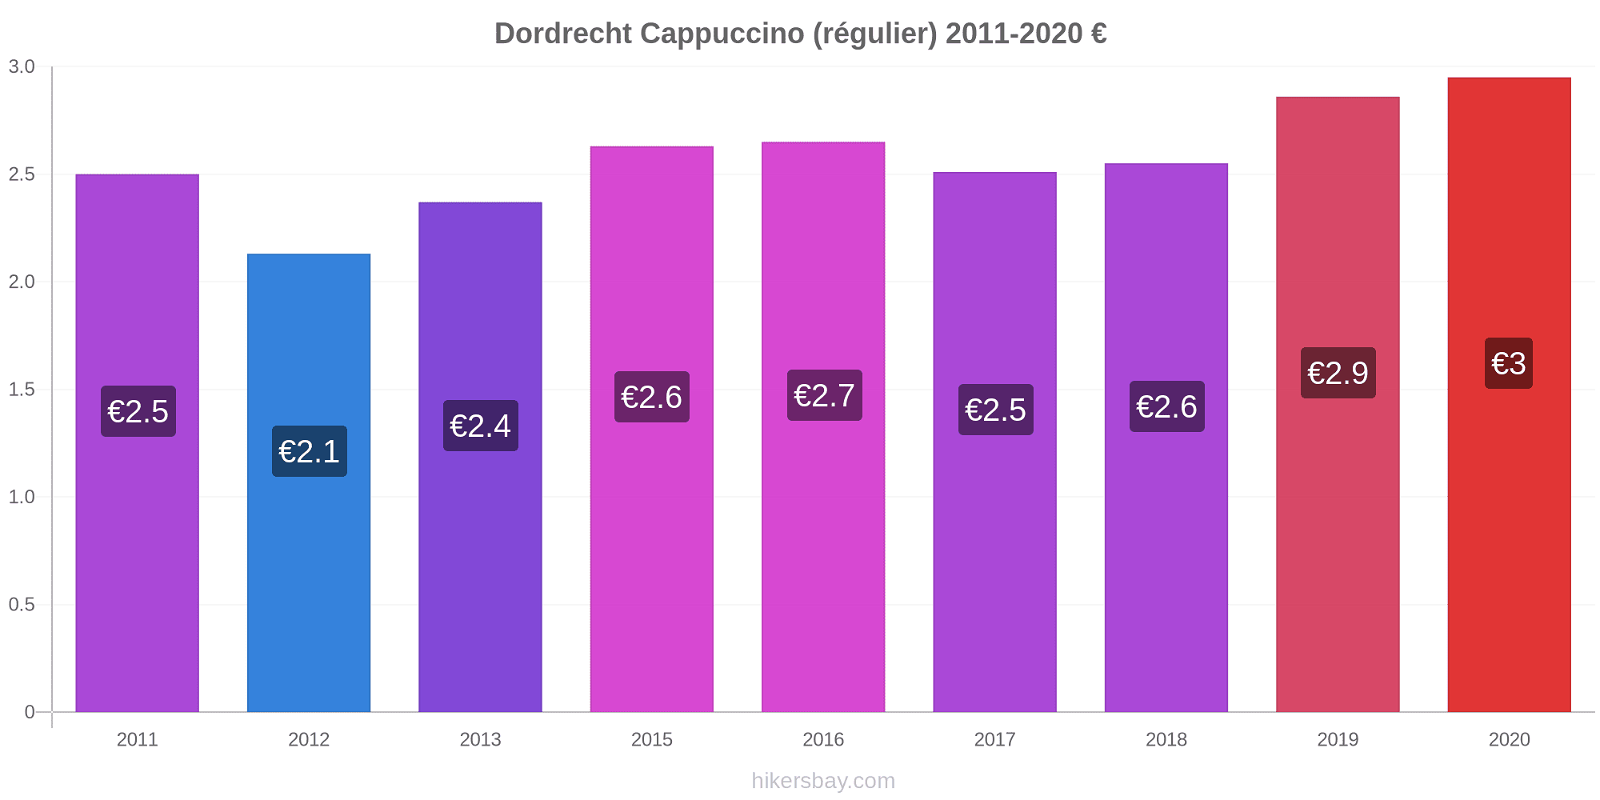 Dordrecht changements de prix Cappuccino (régulier) hikersbay.com